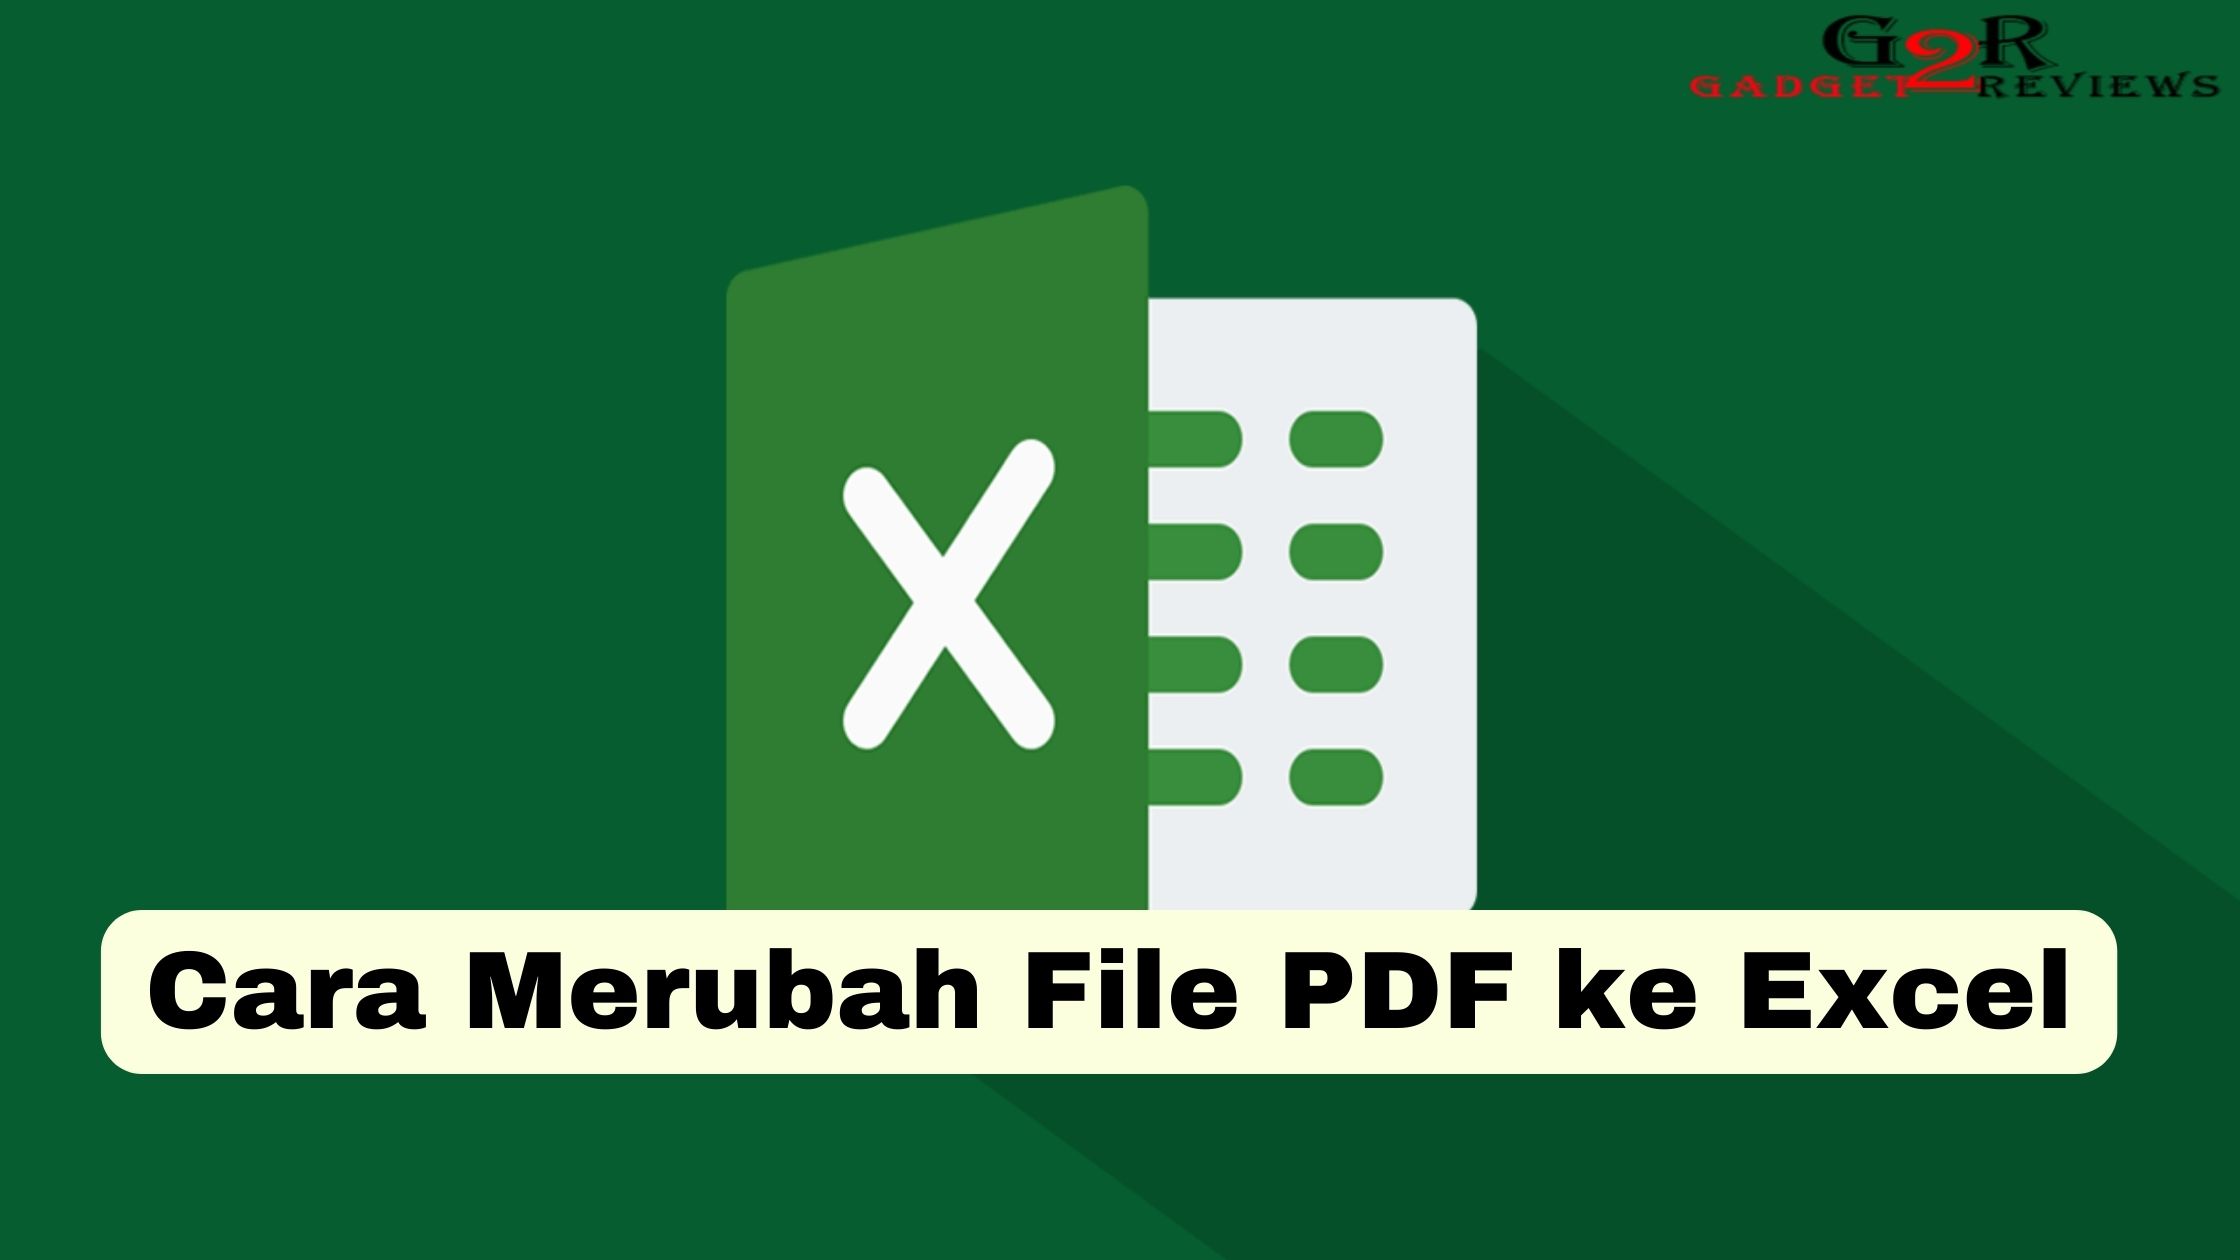 Cara Merubah File PDF ke Excel